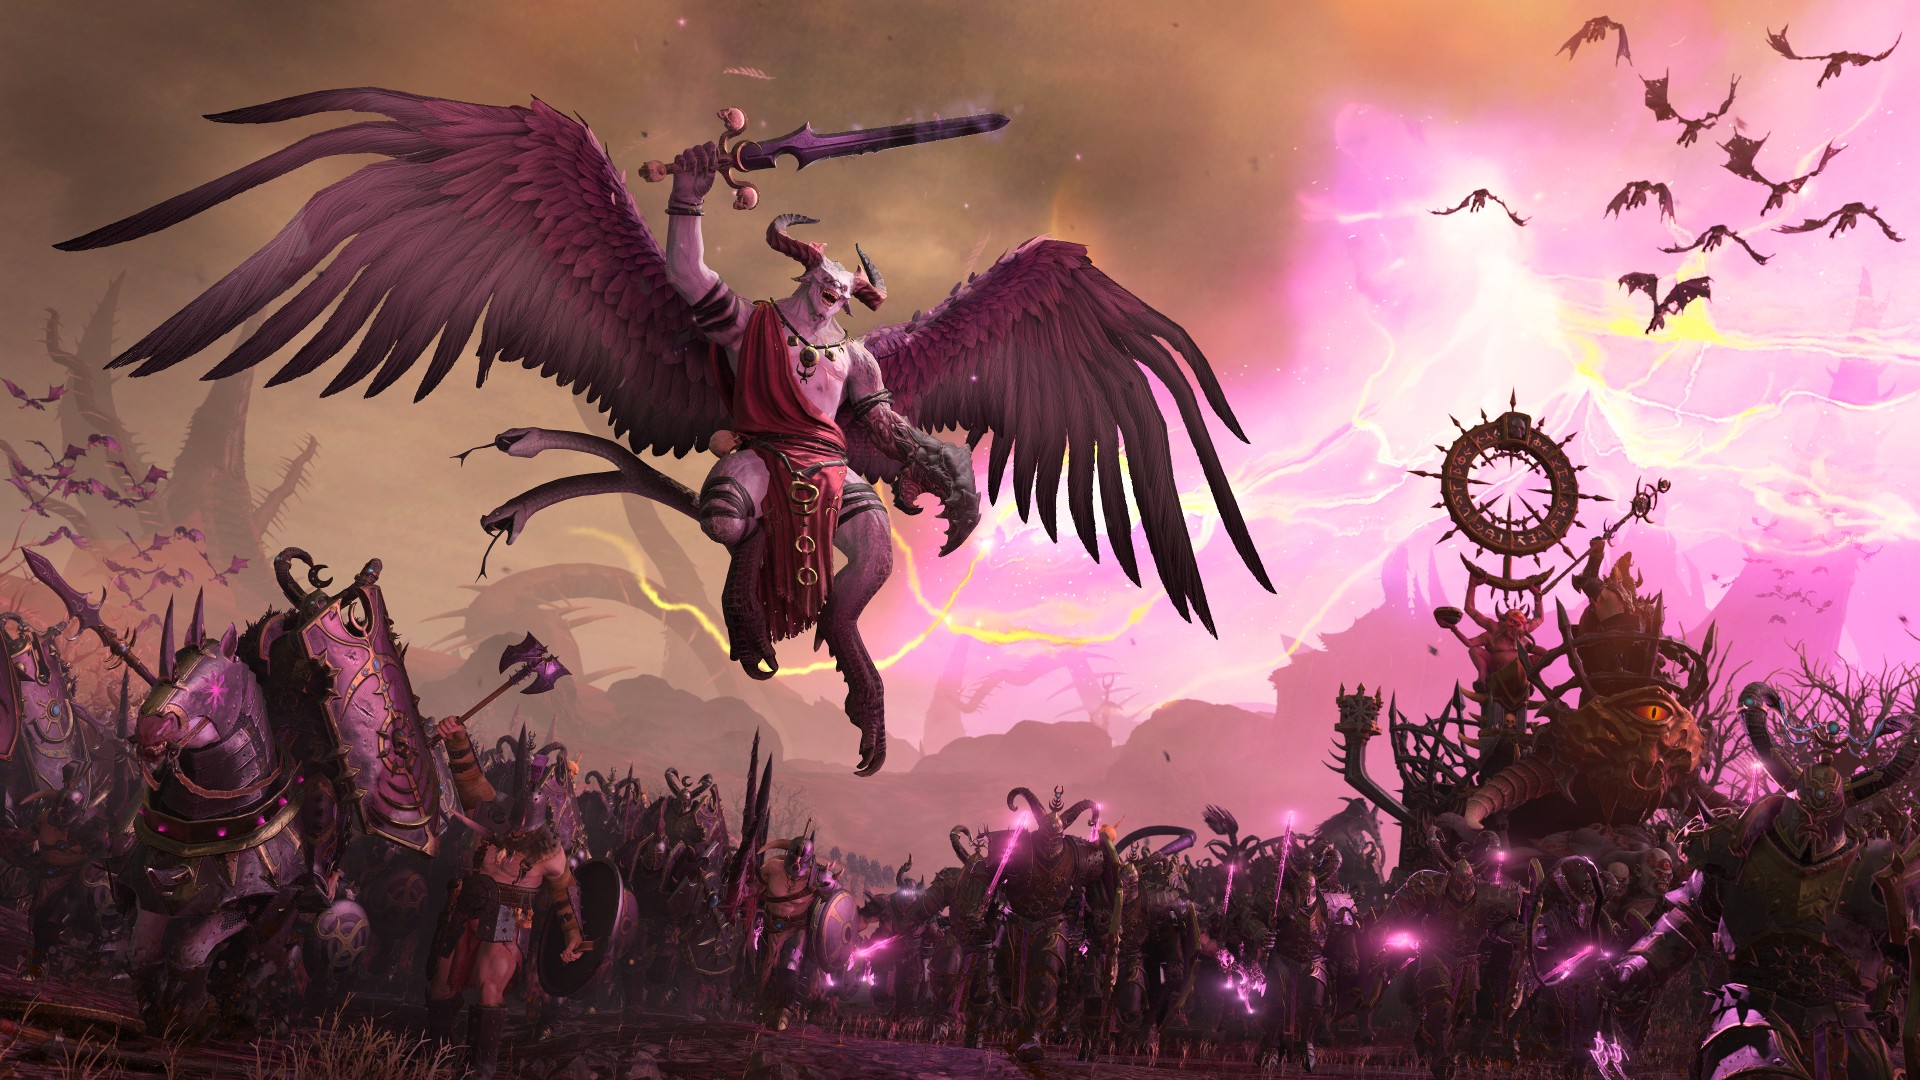 يقول مطور لعبة Warhammer 3: Immortal Empires أن المستوطنات 'على رأس القائمة': وحش طائر عملاق يطير فوق ساحة معركة خيالية